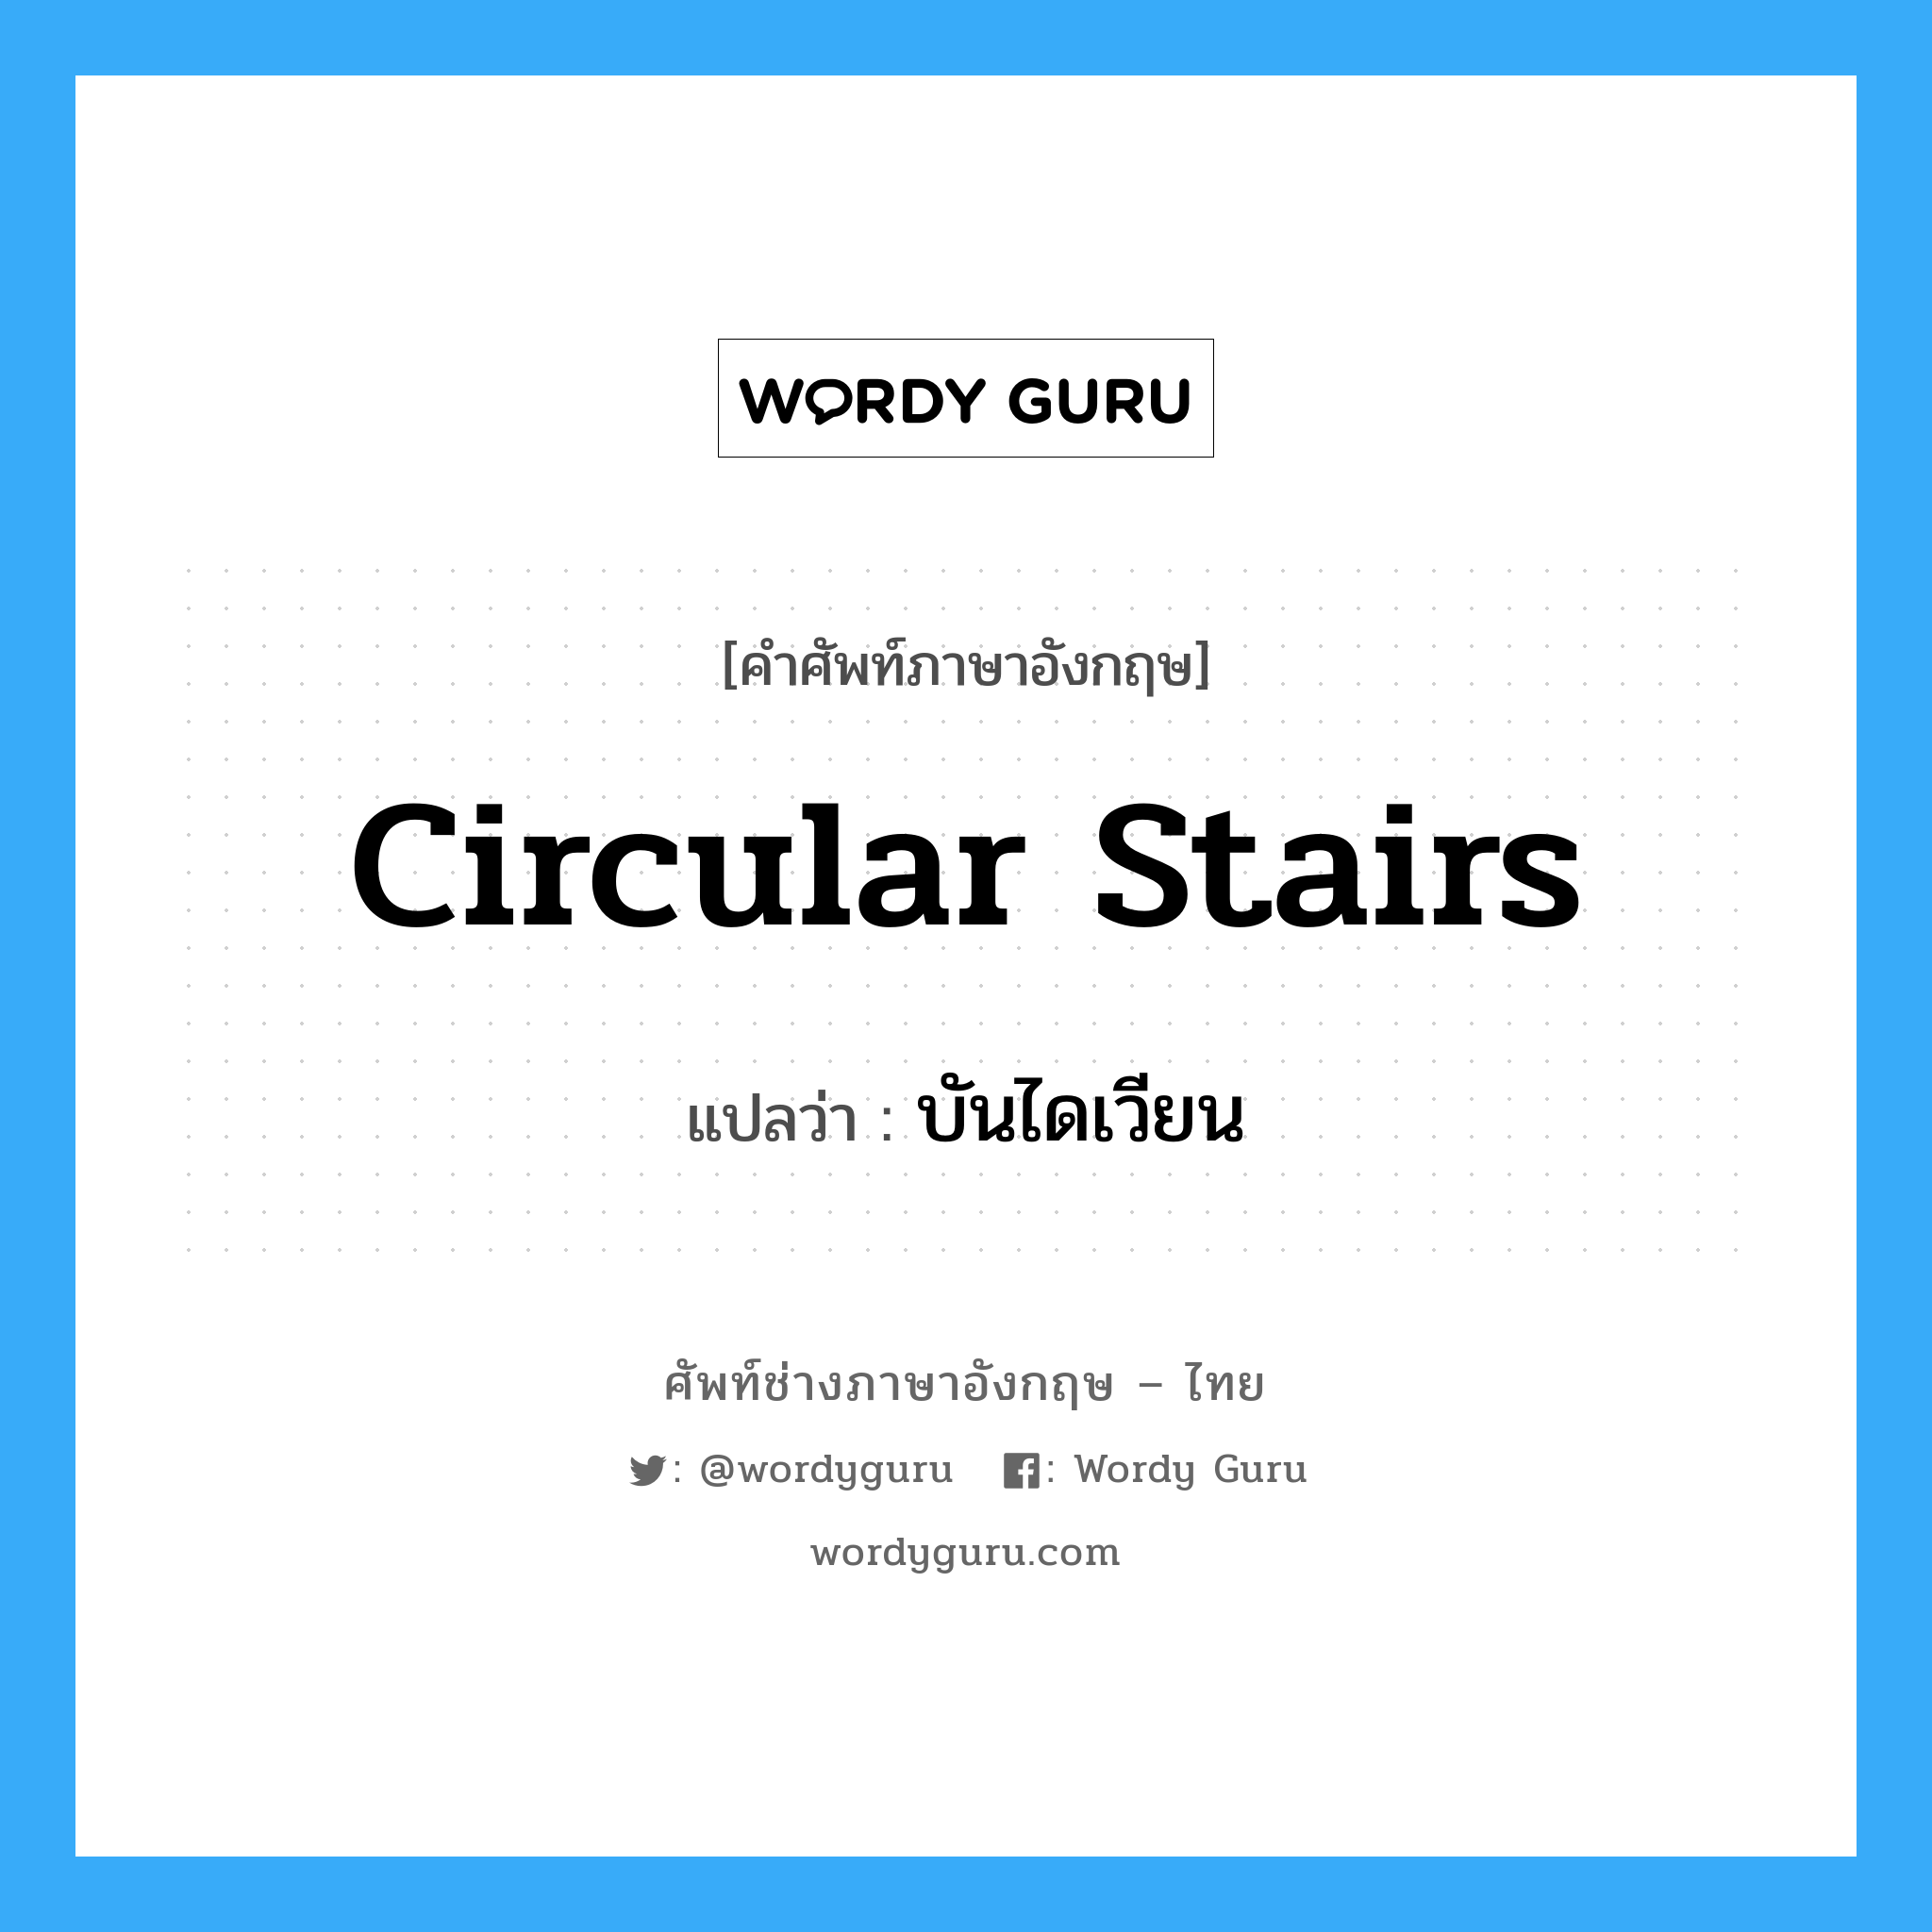 บันไดเวียน ภาษาอังกฤษ?, คำศัพท์ช่างภาษาอังกฤษ - ไทย บันไดเวียน คำศัพท์ภาษาอังกฤษ บันไดเวียน แปลว่า circular stairs